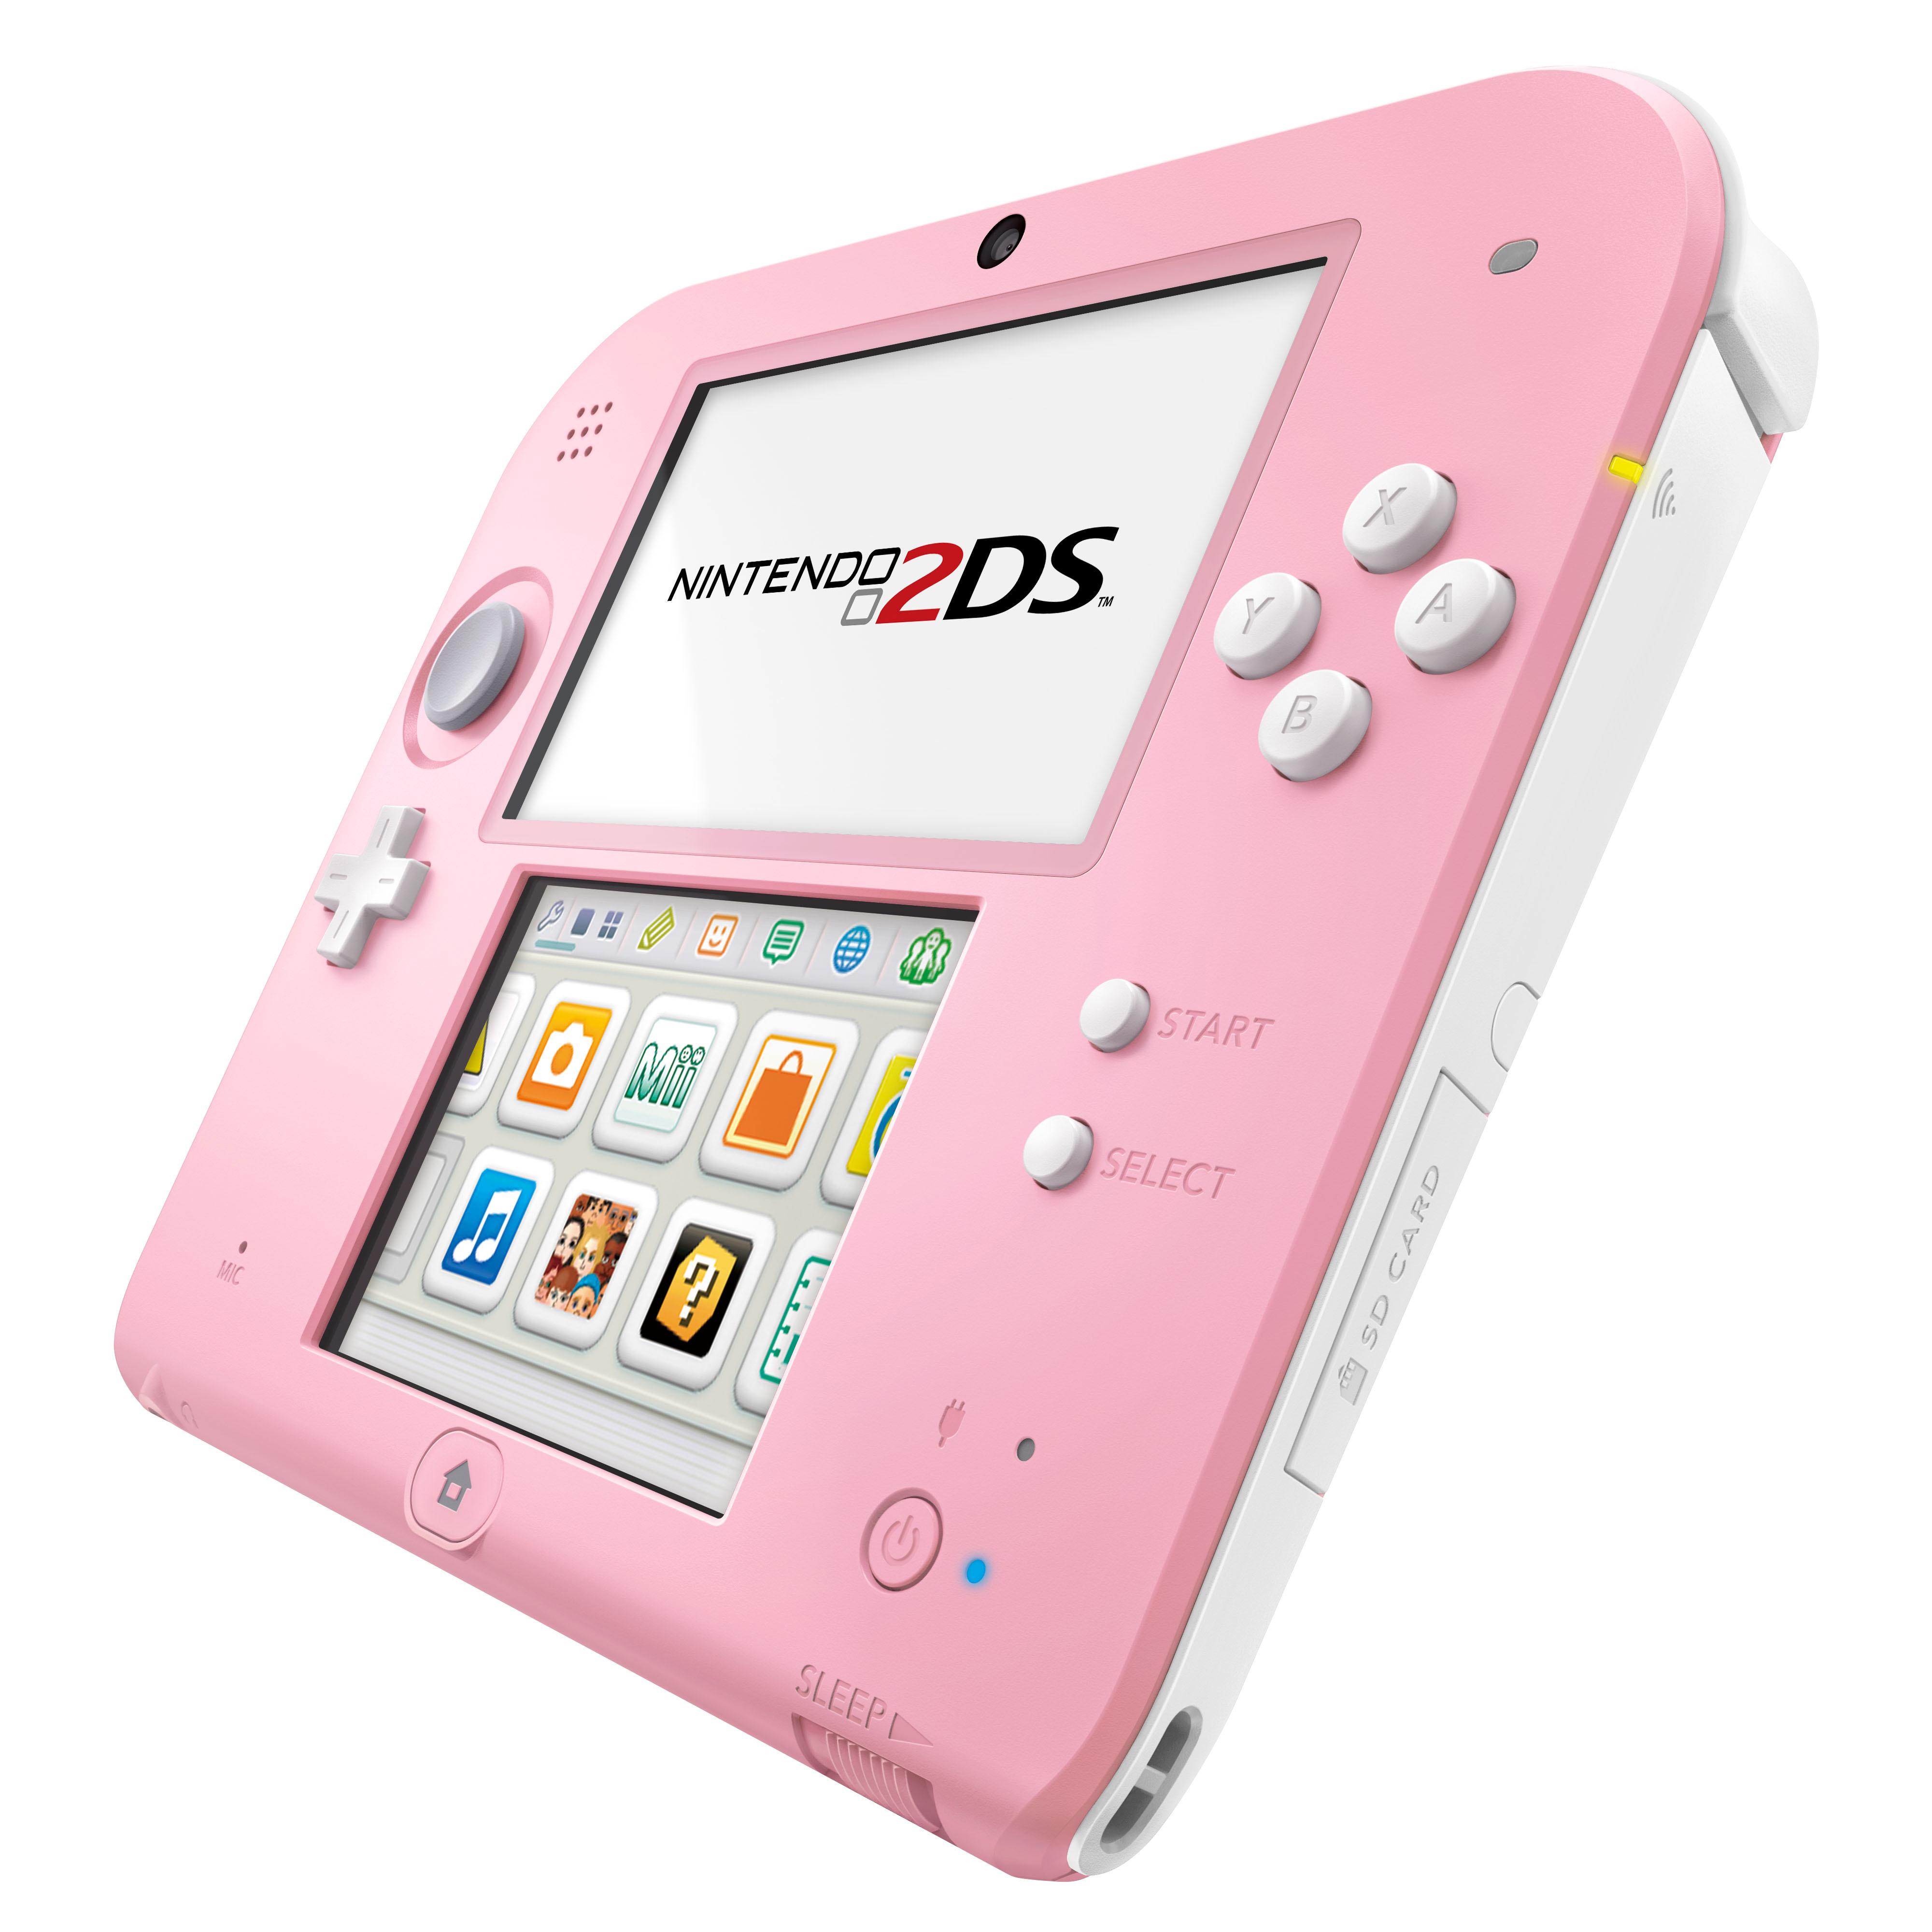 Occlusie opraken Onderhoud Nintendo 2DS - Roze/Wit kopen - €71